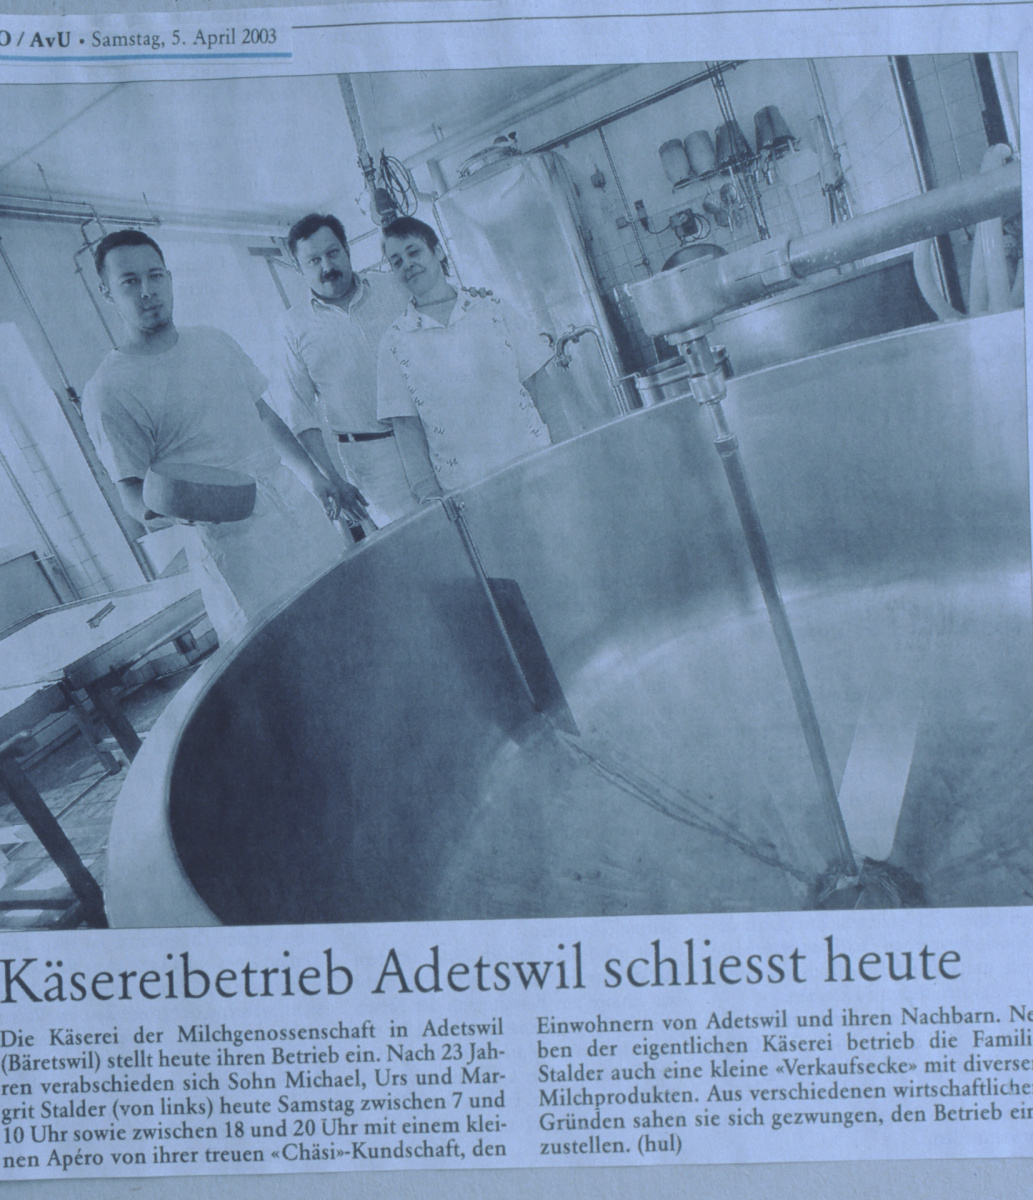 ZO, ‚Käsereibetrieb Adetswil schliesst heute‘, vl Michael, Urs und Margrit Stalder